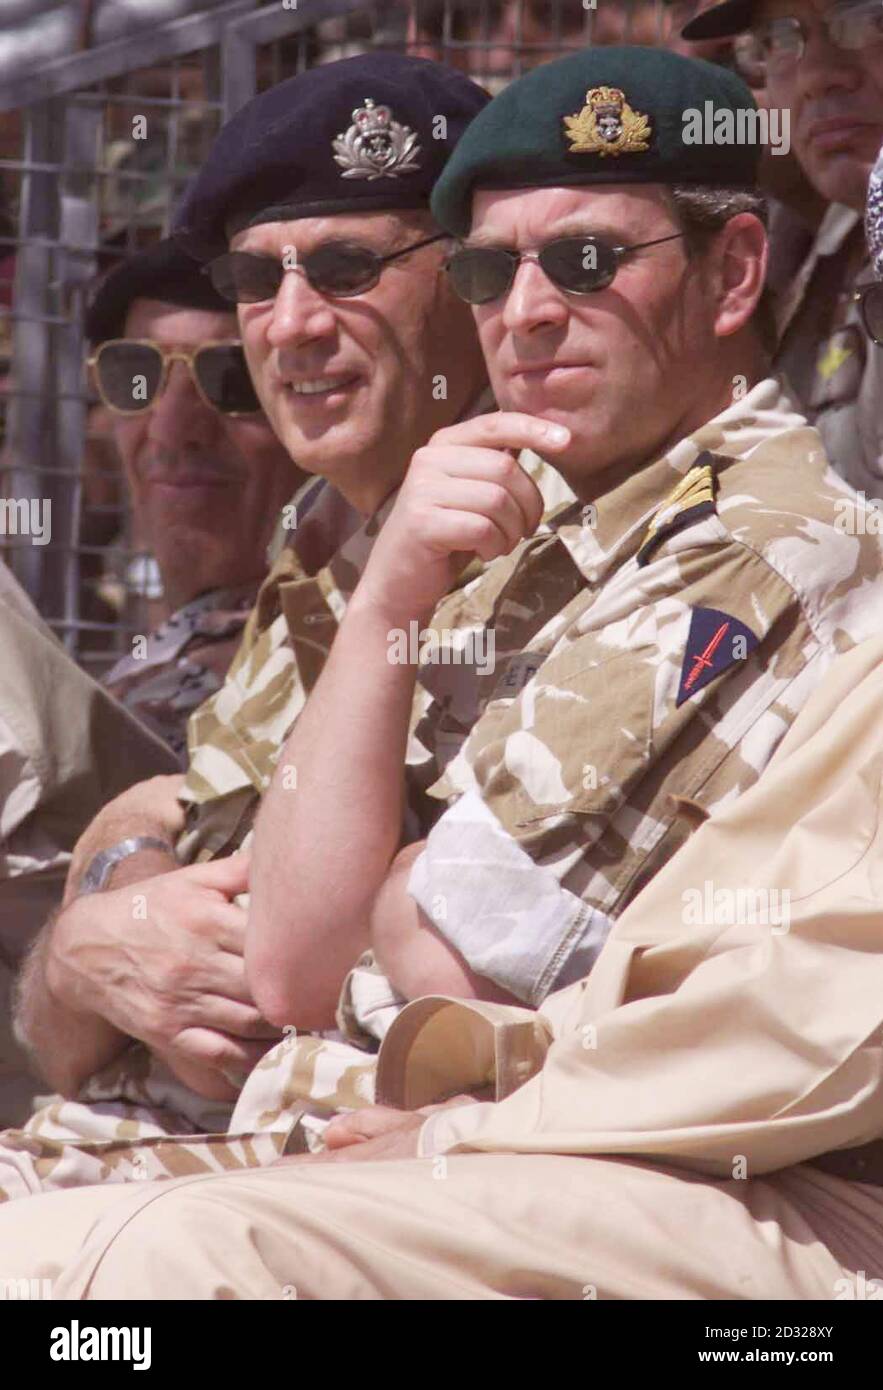 S.H. Prinz Andrew, Herzog von York, zusammen mit Admiral Sir Michael Boyce, Chief of Defense (C) beobachten die Royal Marines von 40 Commando den Strand während einer amphibischen Demonstration in Oman. *...zweihundert Mann aus 40 Commando, Teil der 3 Commando Brigade, wurden sofort für den Einsatz in Afghanistan in Bereitschaft gesetzt und werden an Bord der HMS Fearless im Golf bleiben, wenn andere Truppen aus dem Training in Oman zurückkehren. Stockfoto